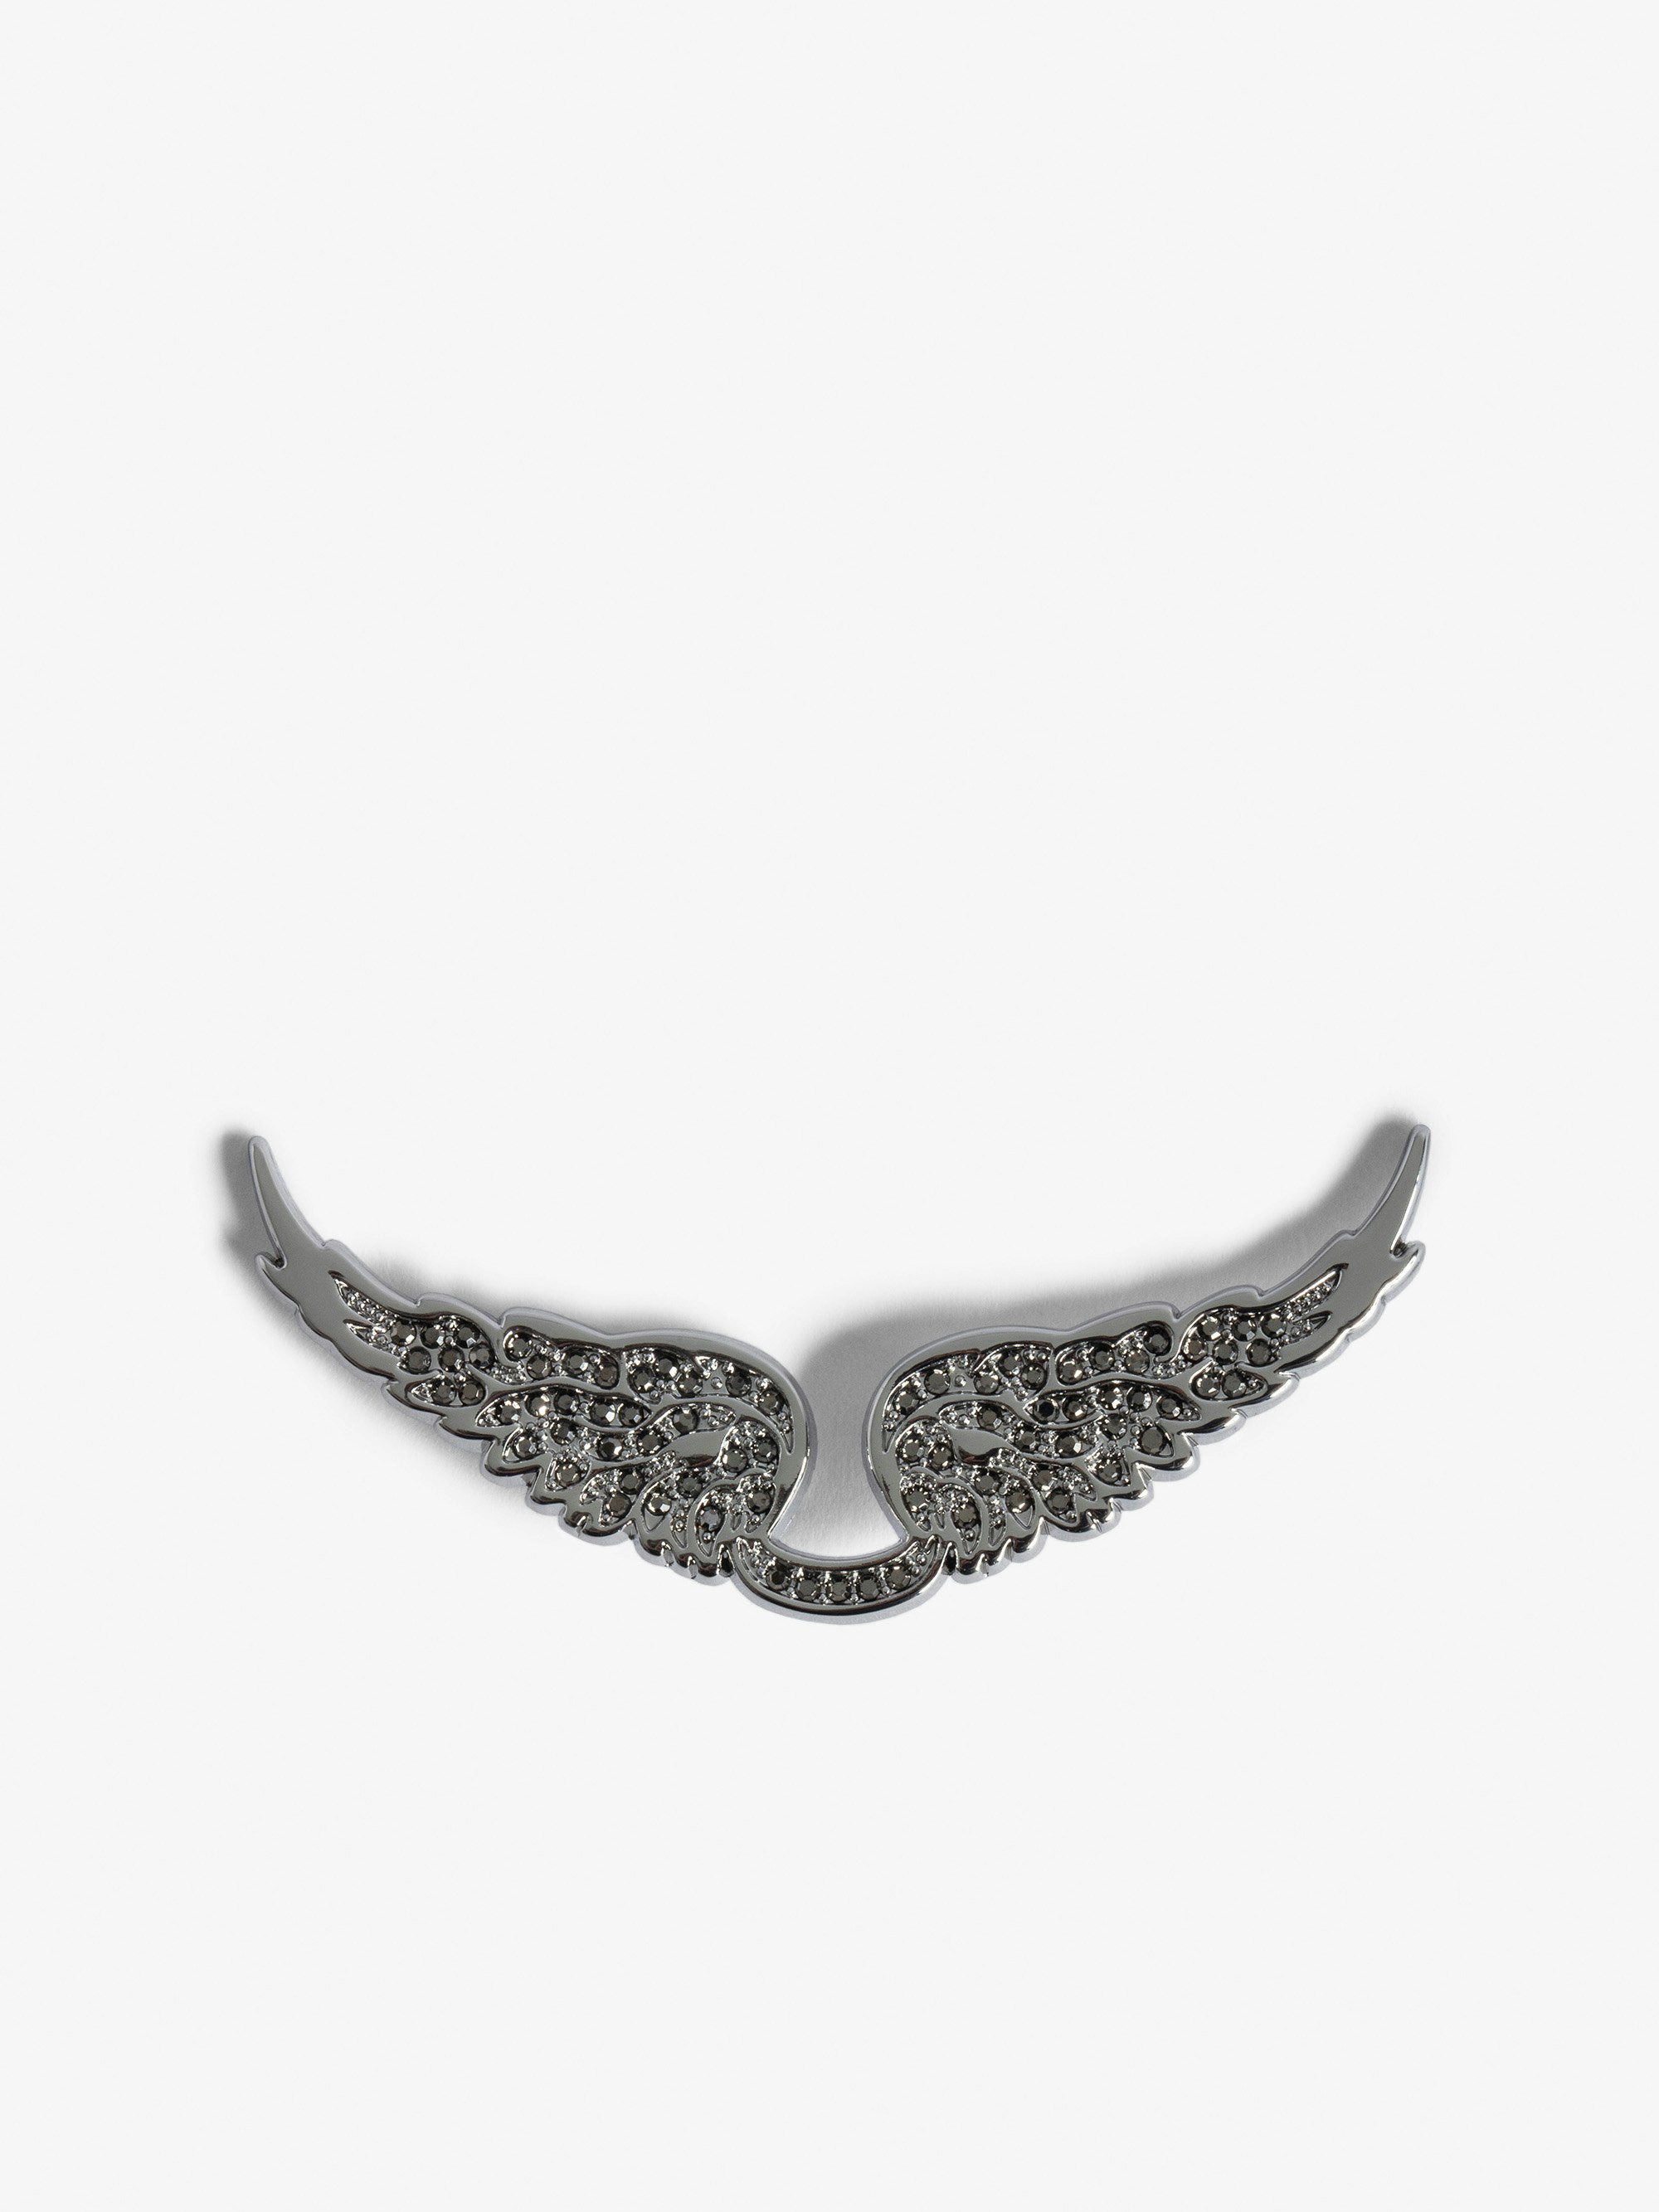 Swings Your Wings Charm - Women’s Silver Diamanté Wings charm.